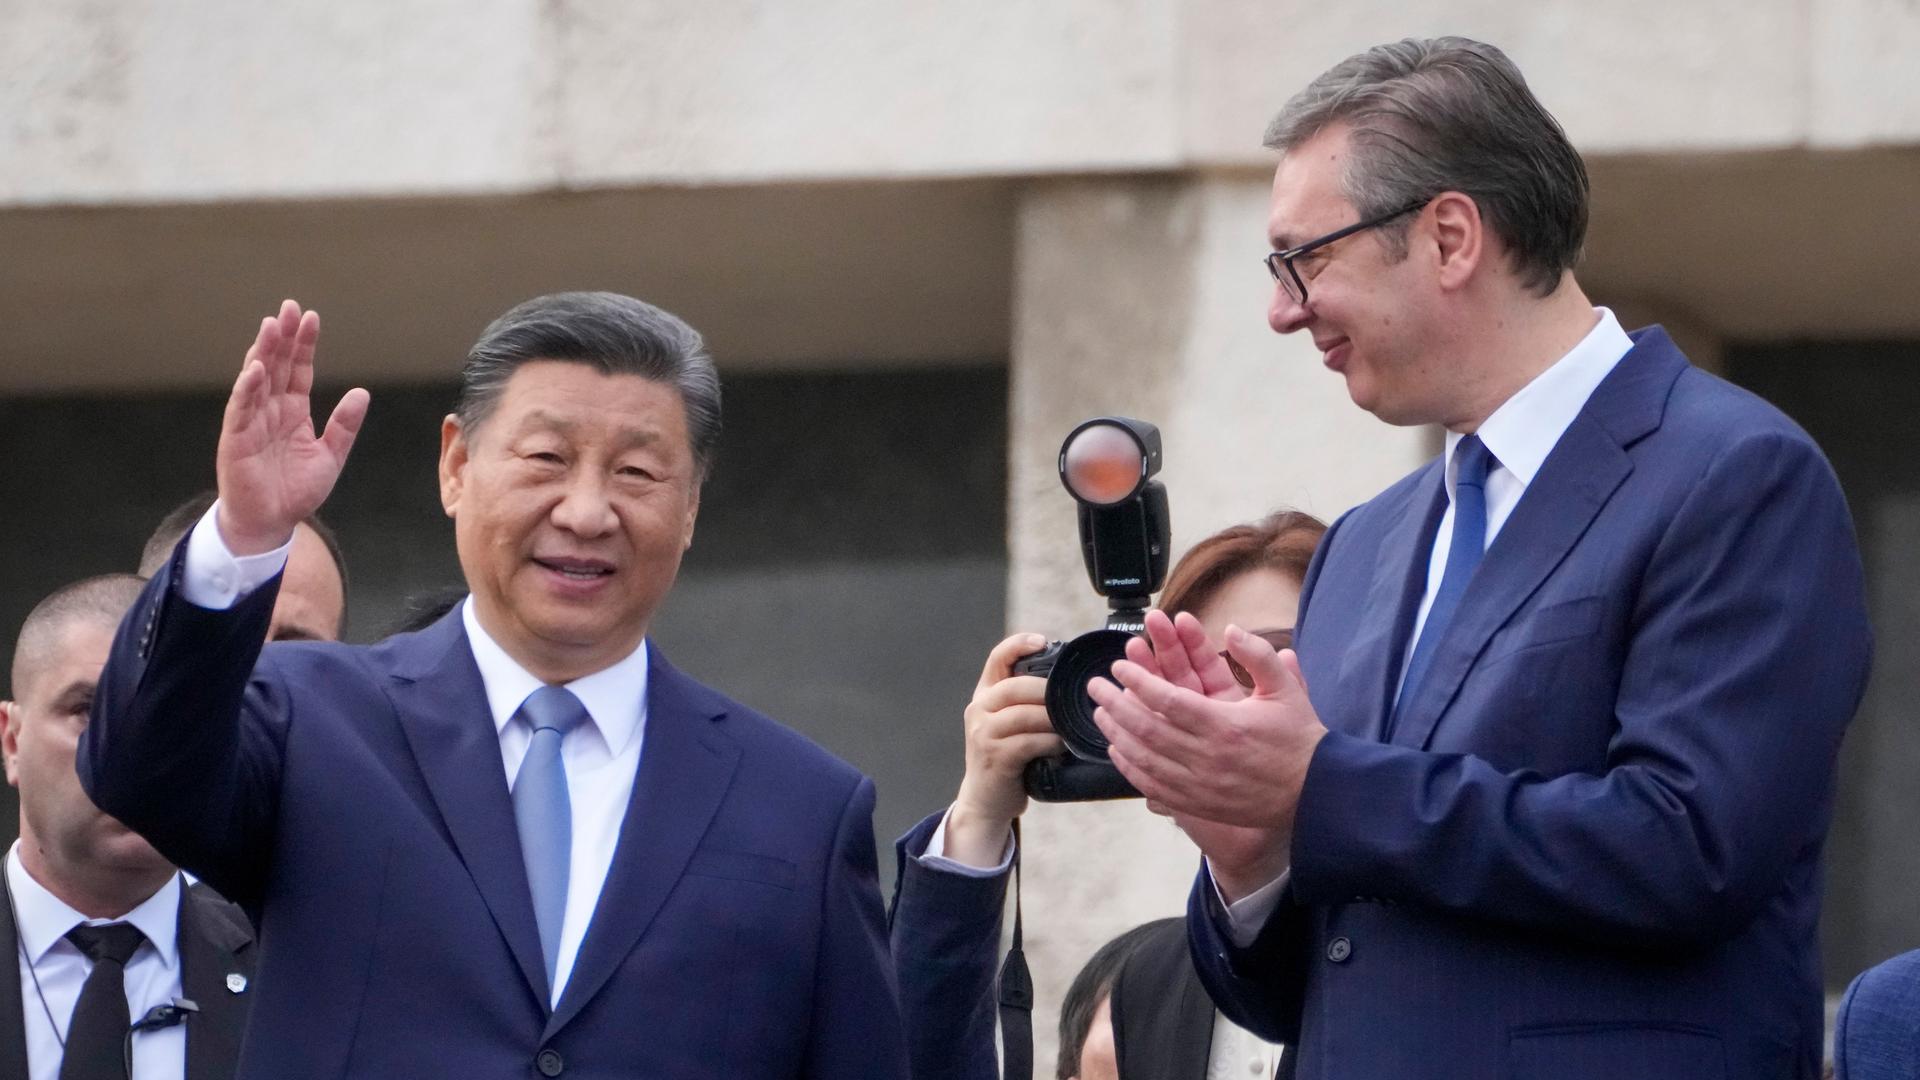 Serbien, Belgrad: Der chinesische Präsident Xi Jinping (l) begrüßt mit seinem serbischen Amtskollegen Aleksandar Vucic die Menge im Serbien-Palast.